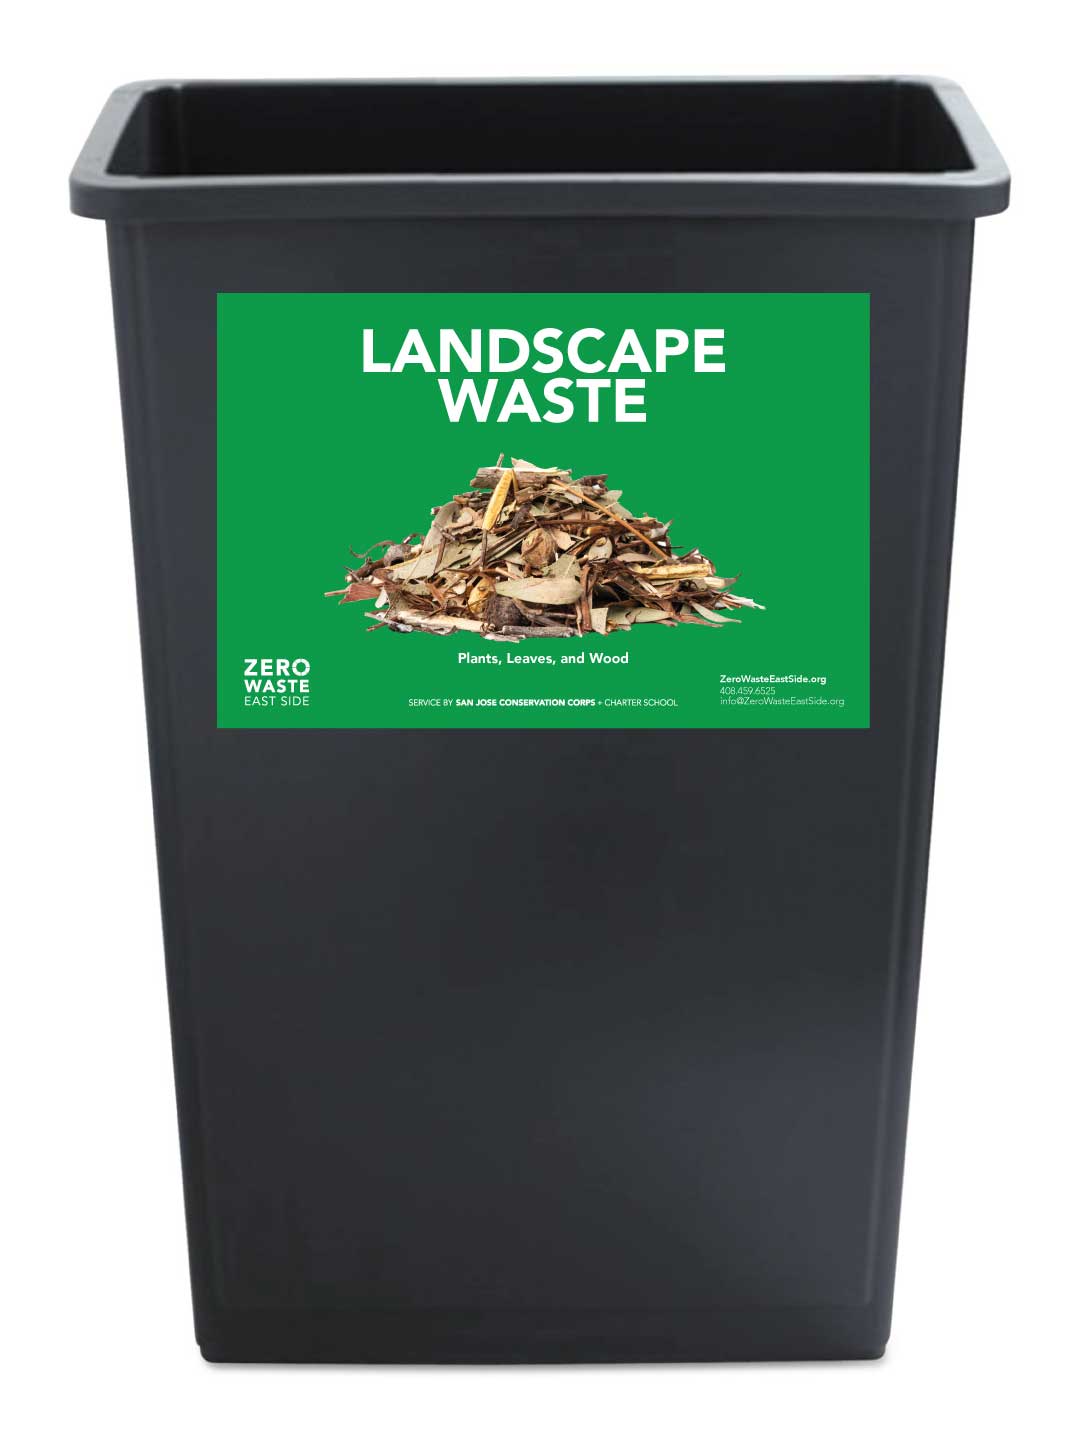 Receptacle Label for Landscape Waste